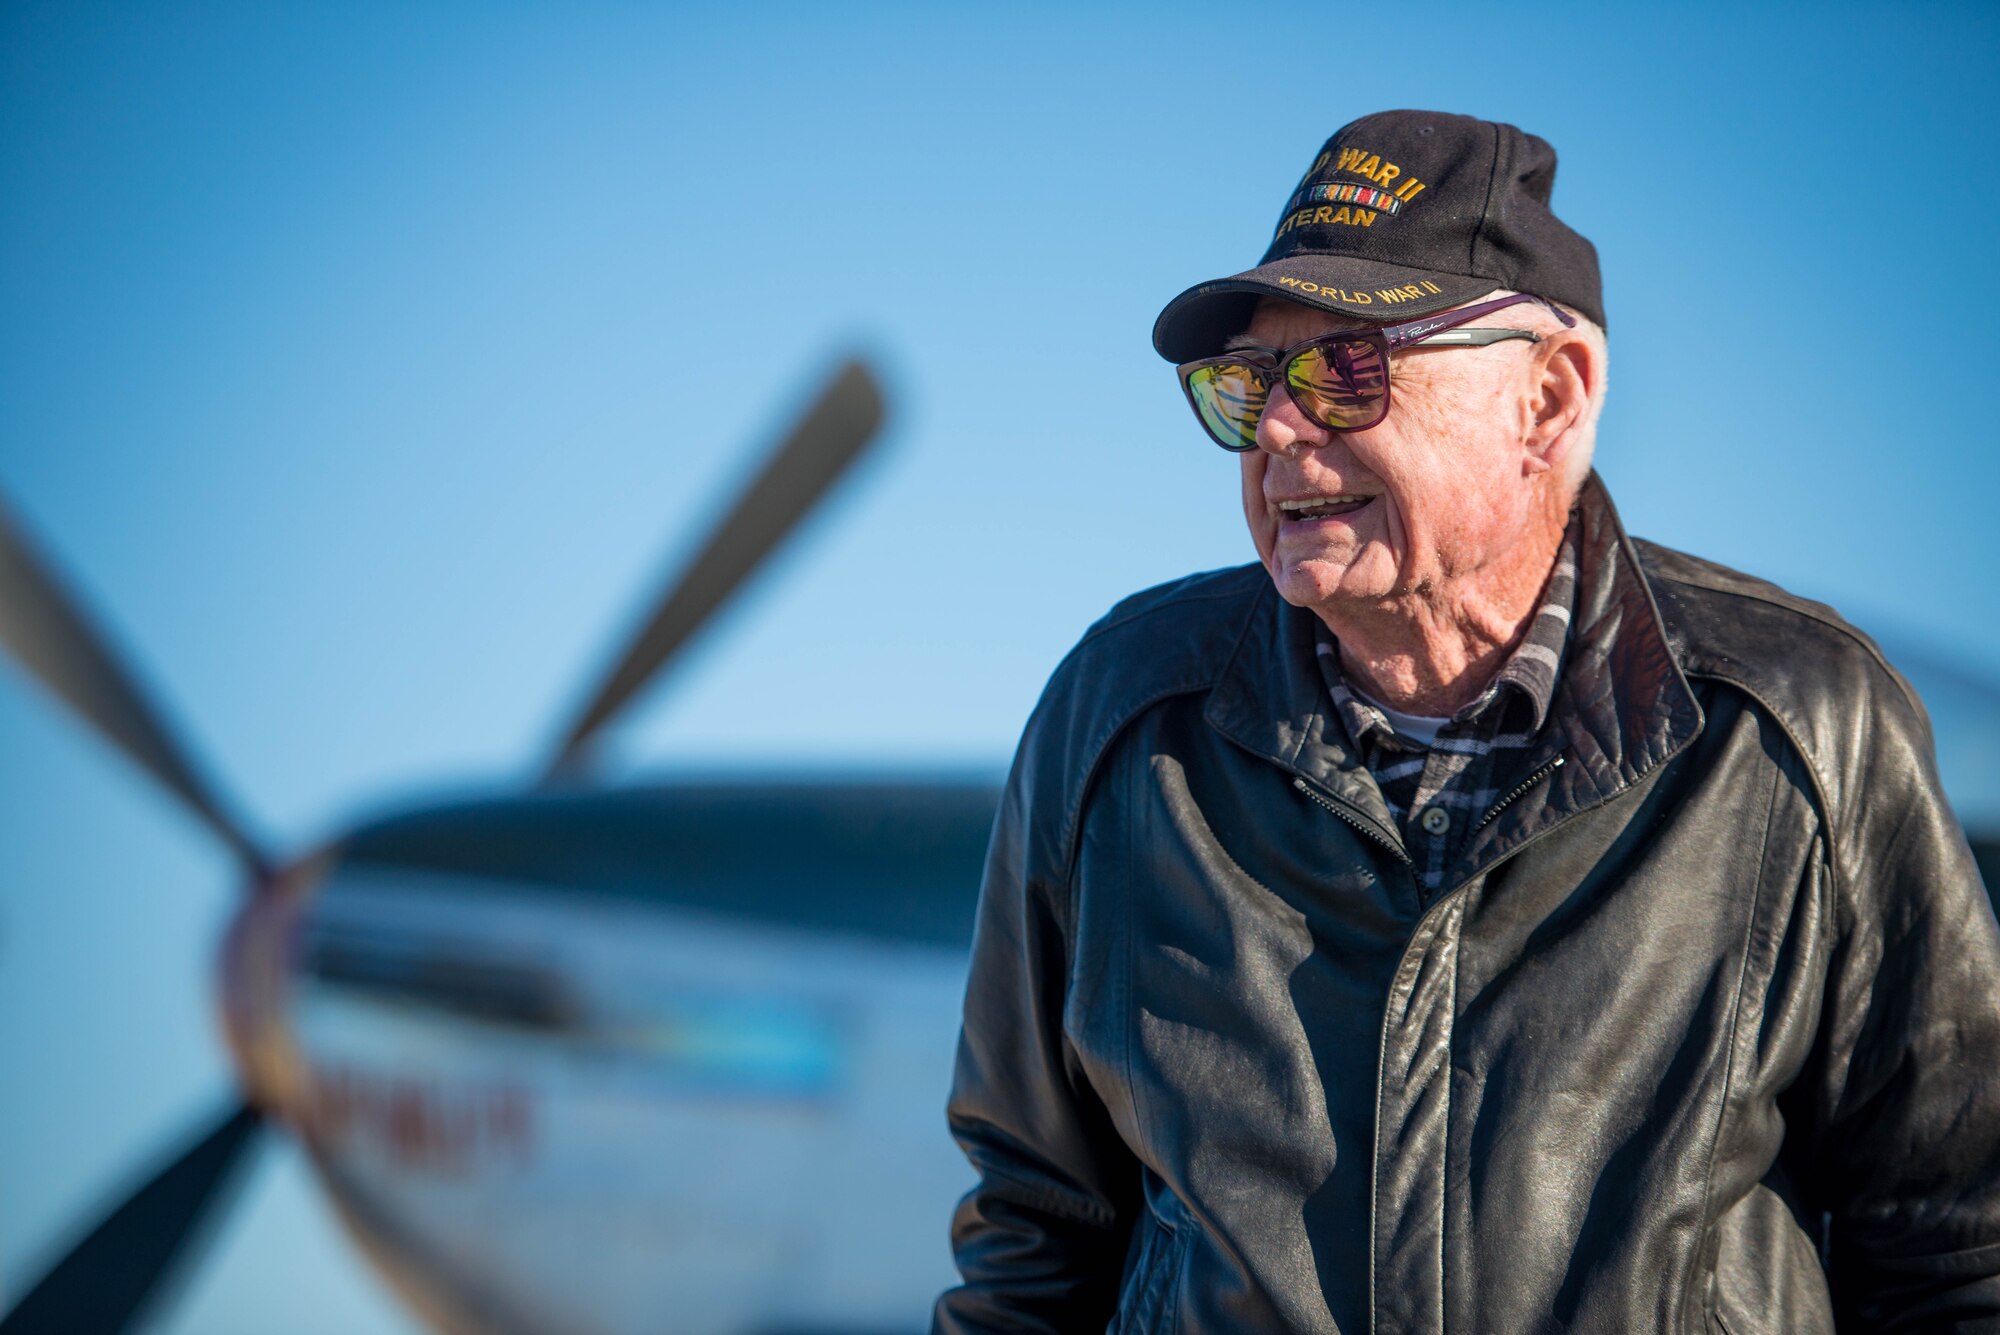 Deane Mitchell, a World War II veteran, pilot, tours a vintage P-51 Mustang